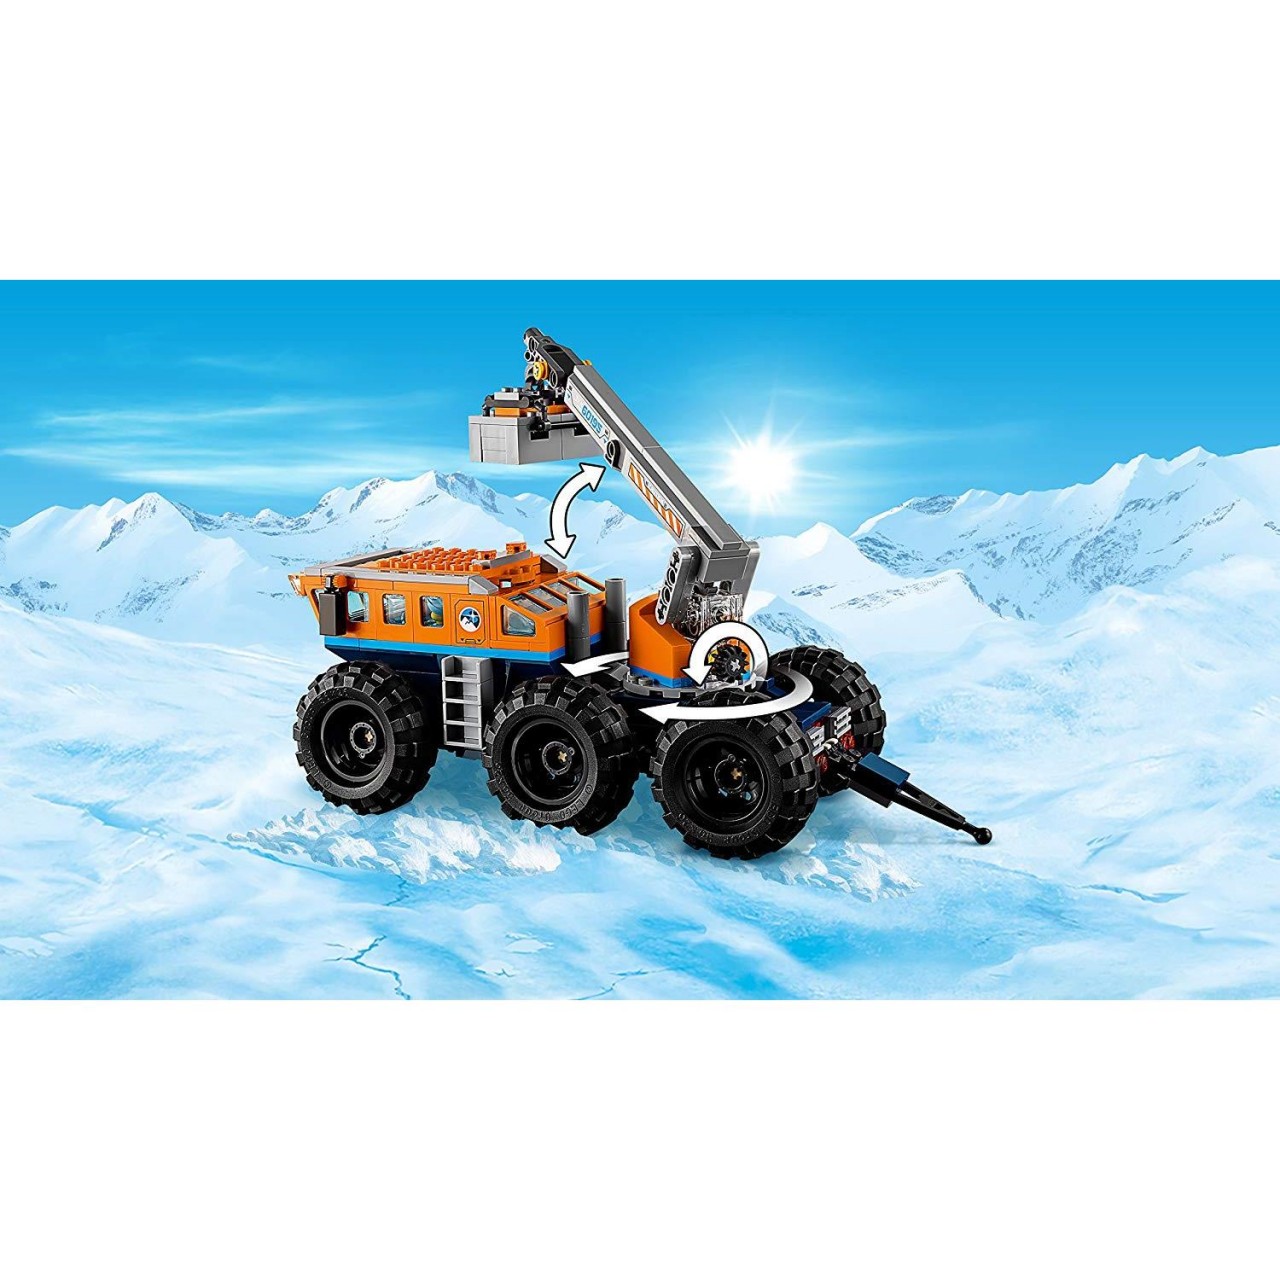 LEGO CITY 60195 Mobile Arktis-Forschungsstation